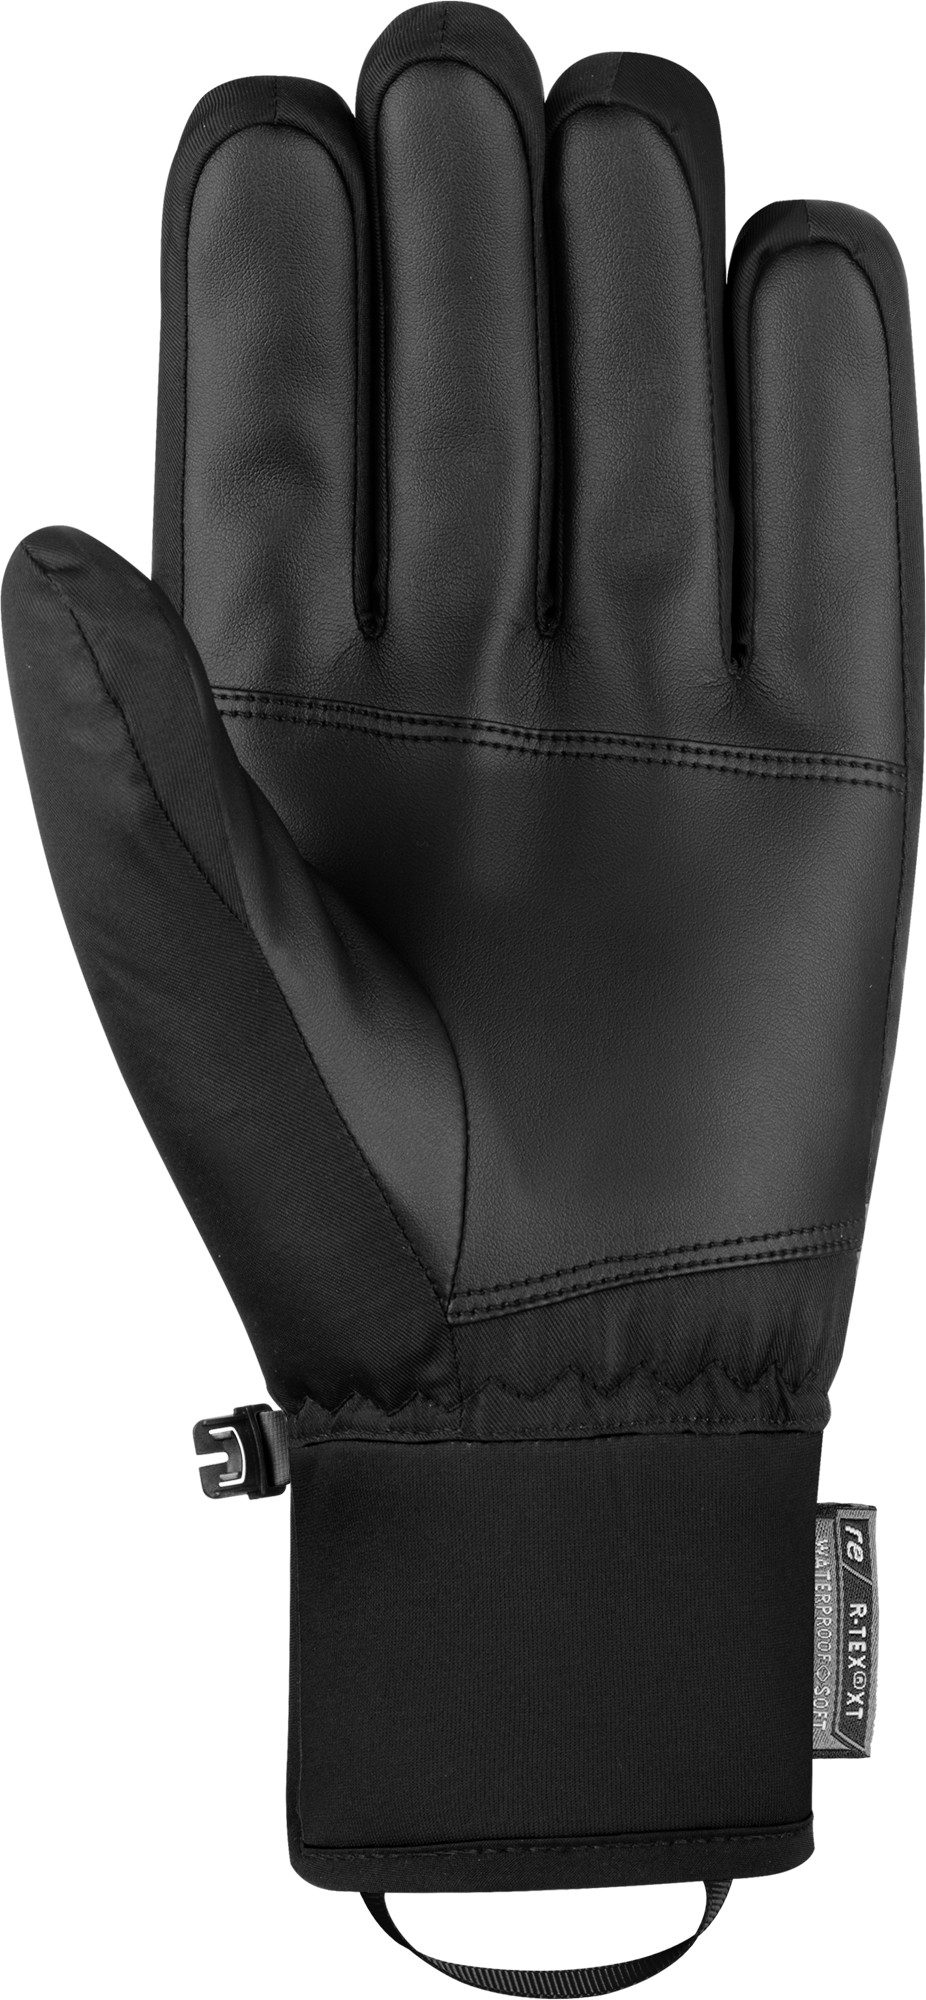 Reusch Storm R-TEX® XT - guanti da sci - uomo